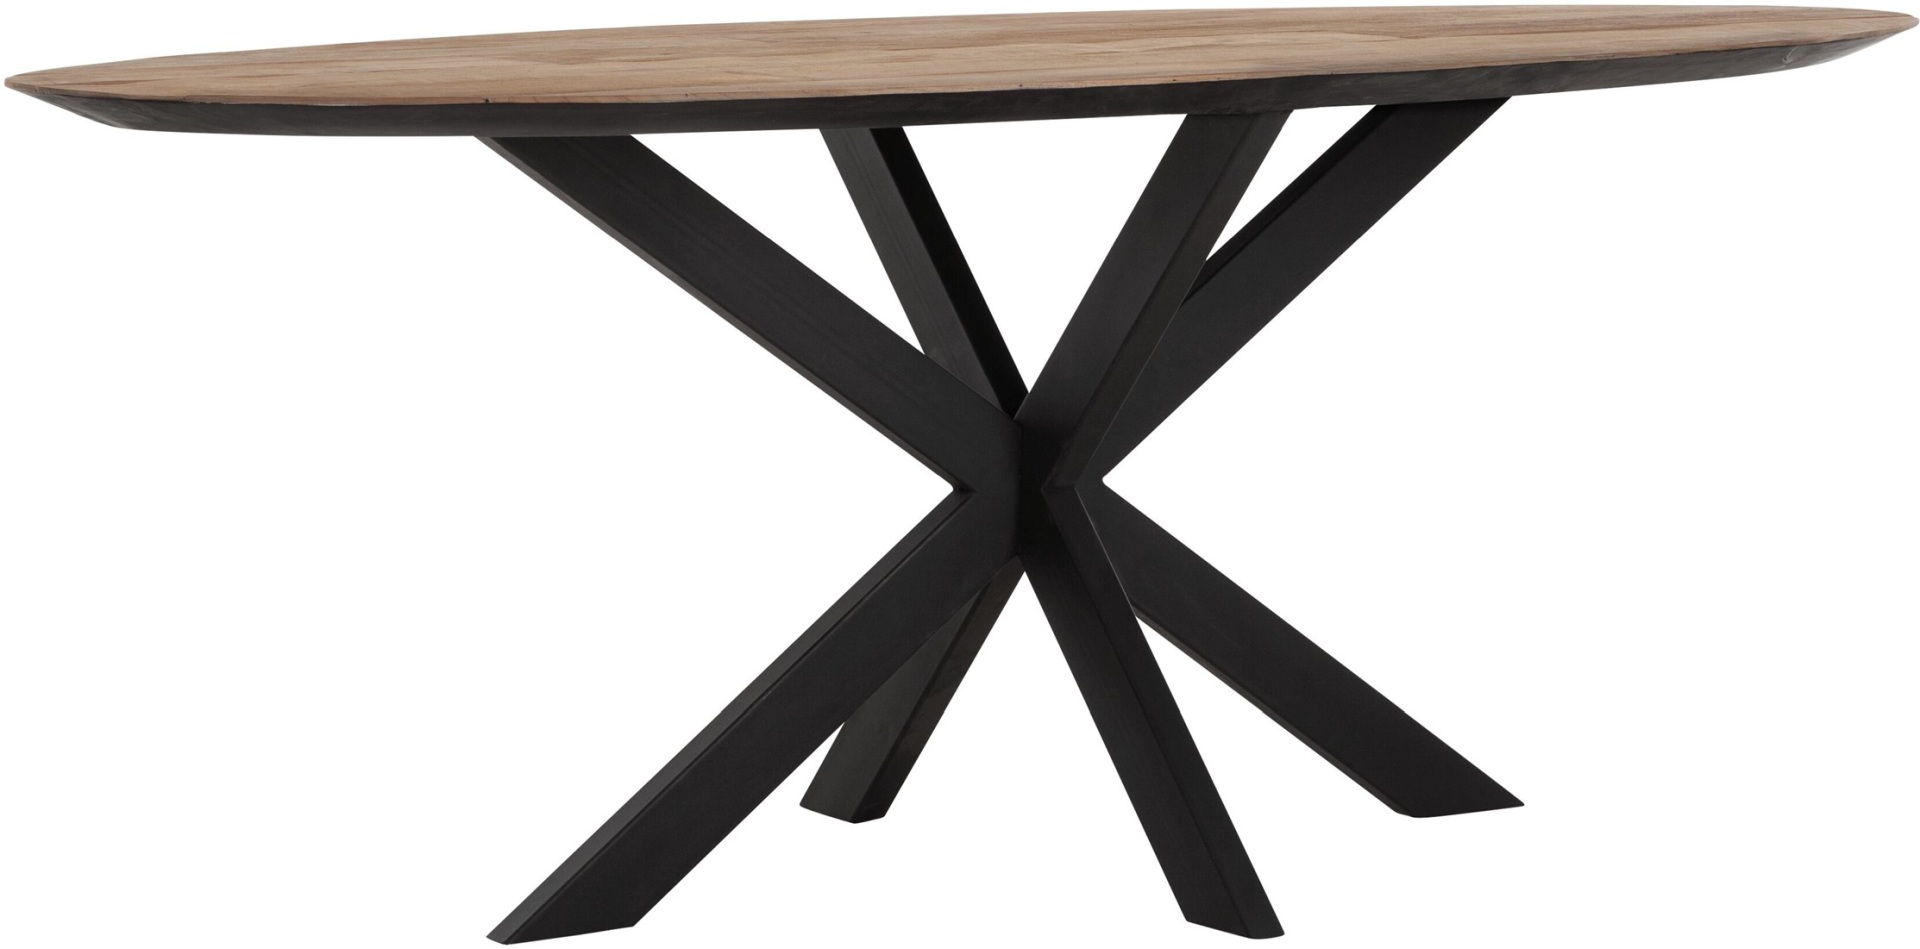 Der Esstisch Shapes überzeugt mit seinem modernem aber auch massivem Design. Gefertigt wurde der Tisch aus recyceltem Teakholz, welches einen natürlichen Farbton besitzt. Das Gestell ist aus Metall und ist Schwarz. Der Tisch hat eine Länge von 200 cm.